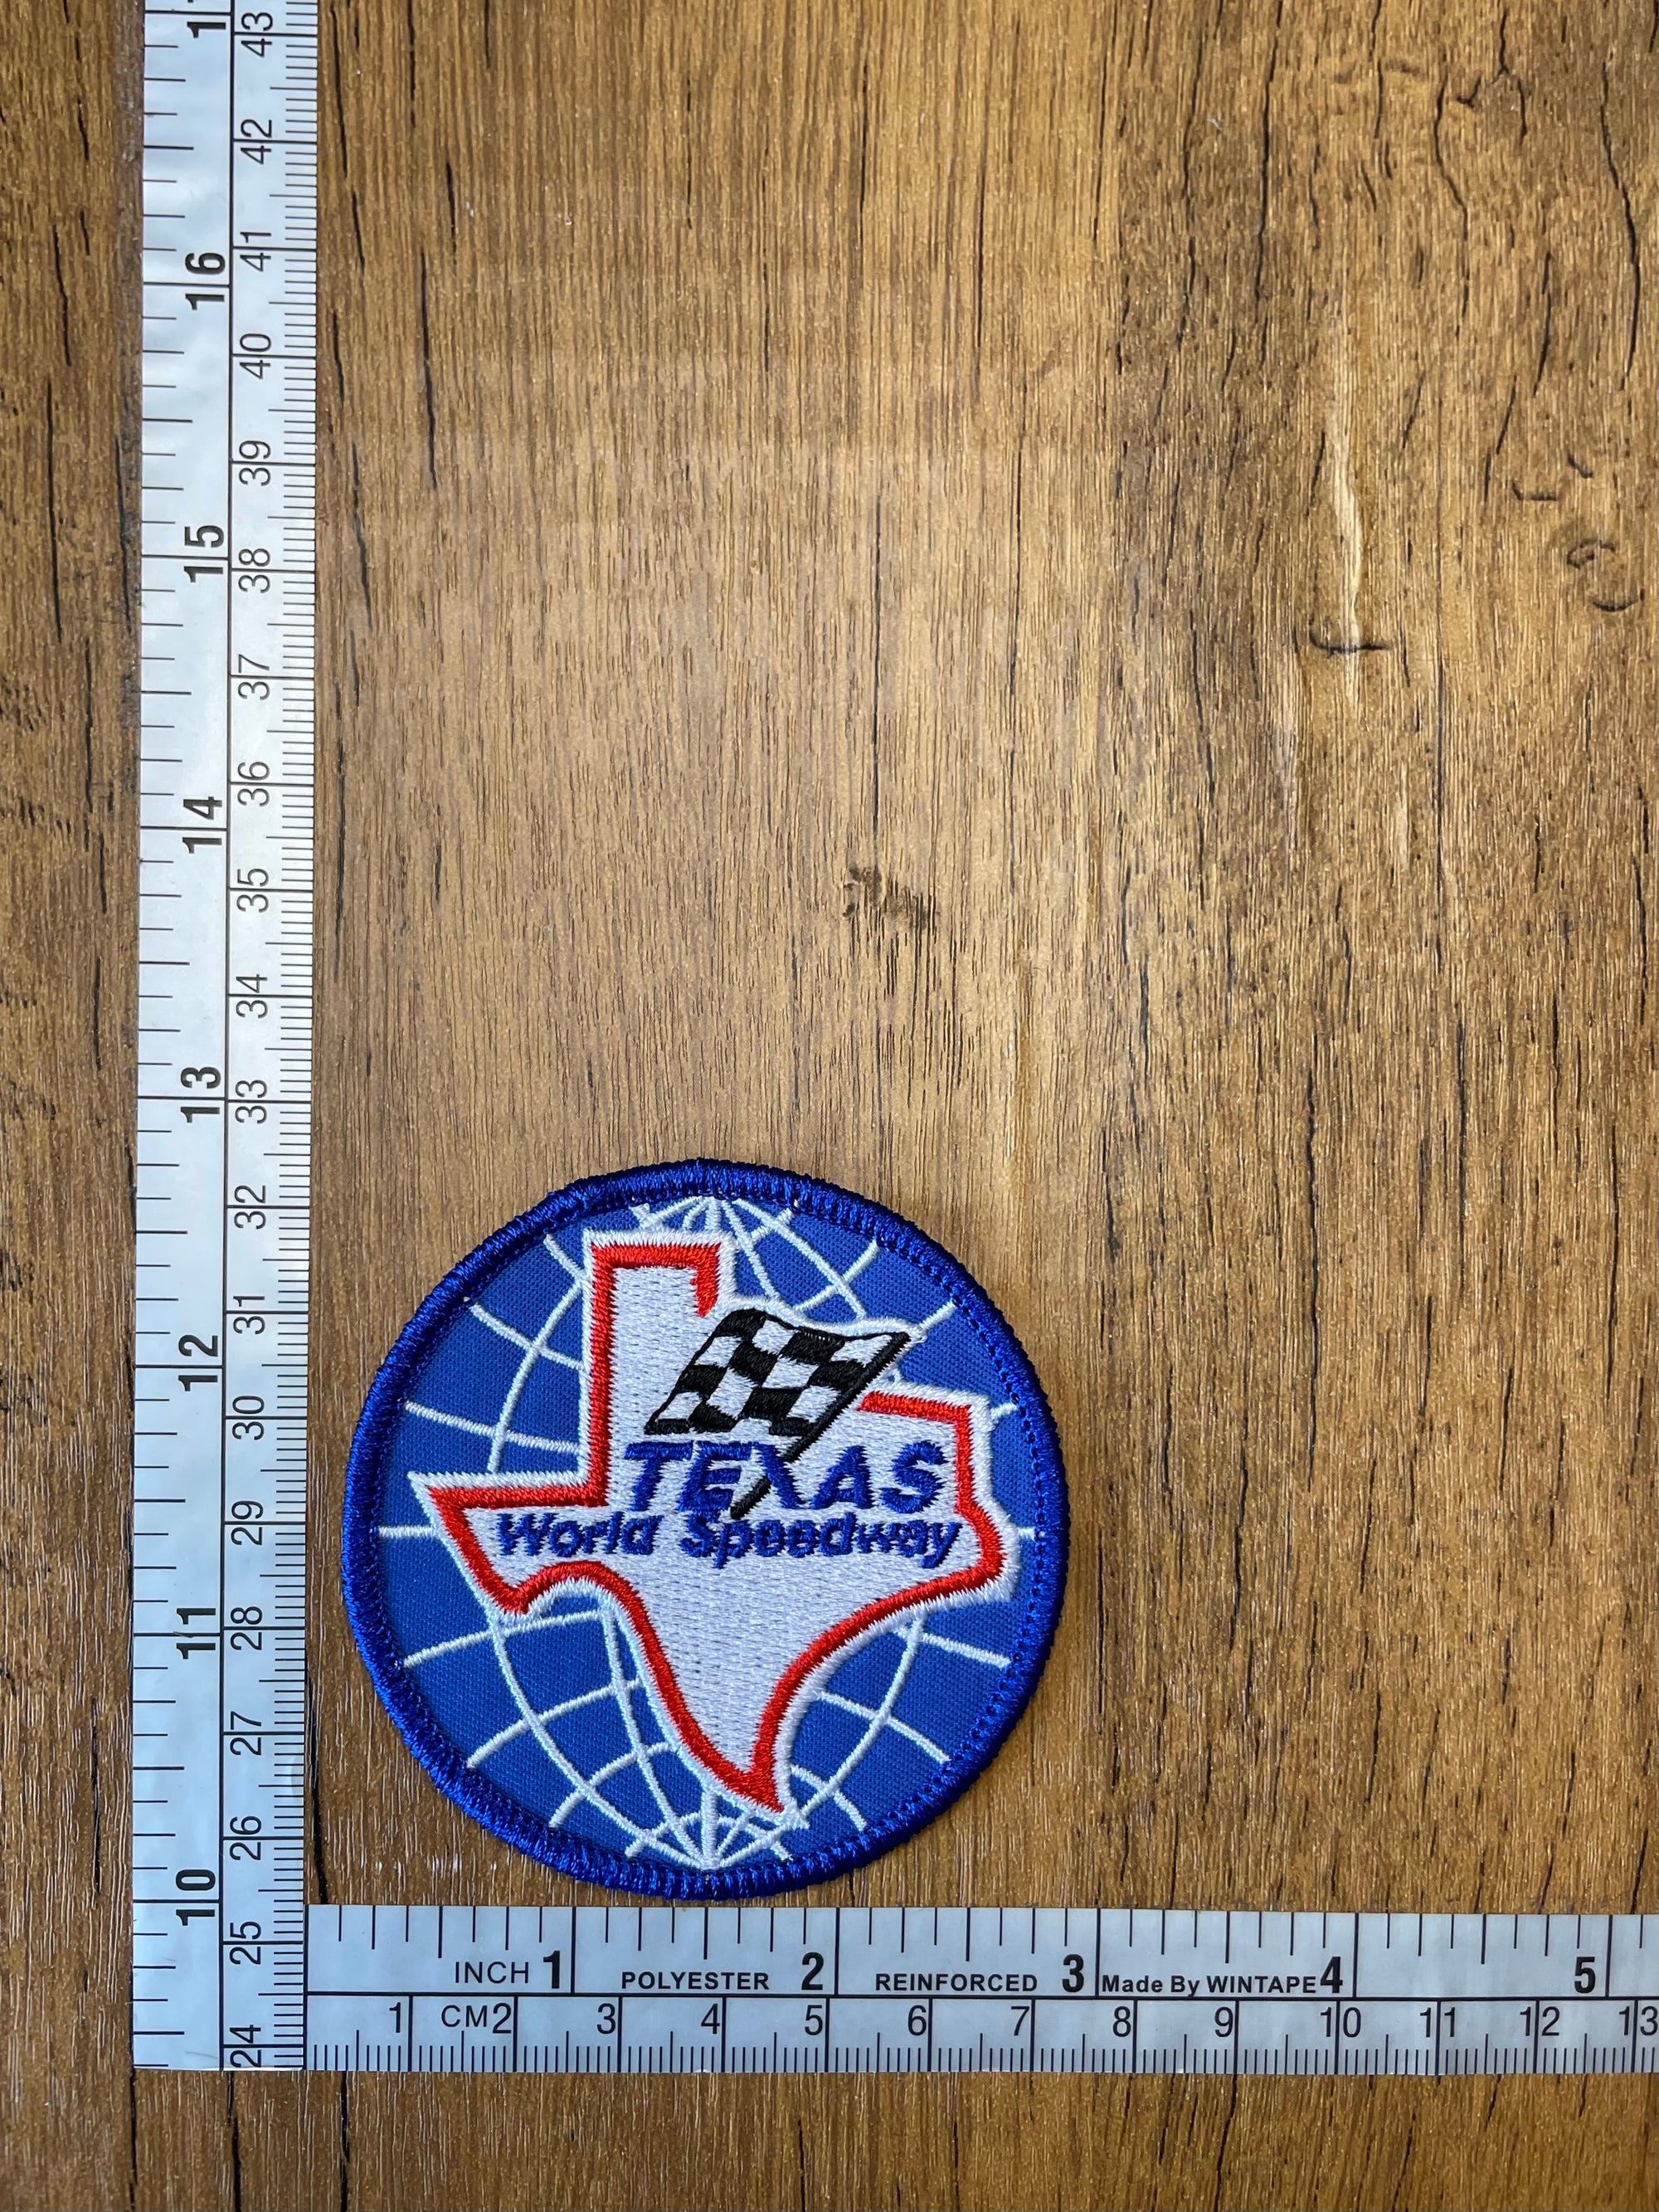 Texas World Speedway